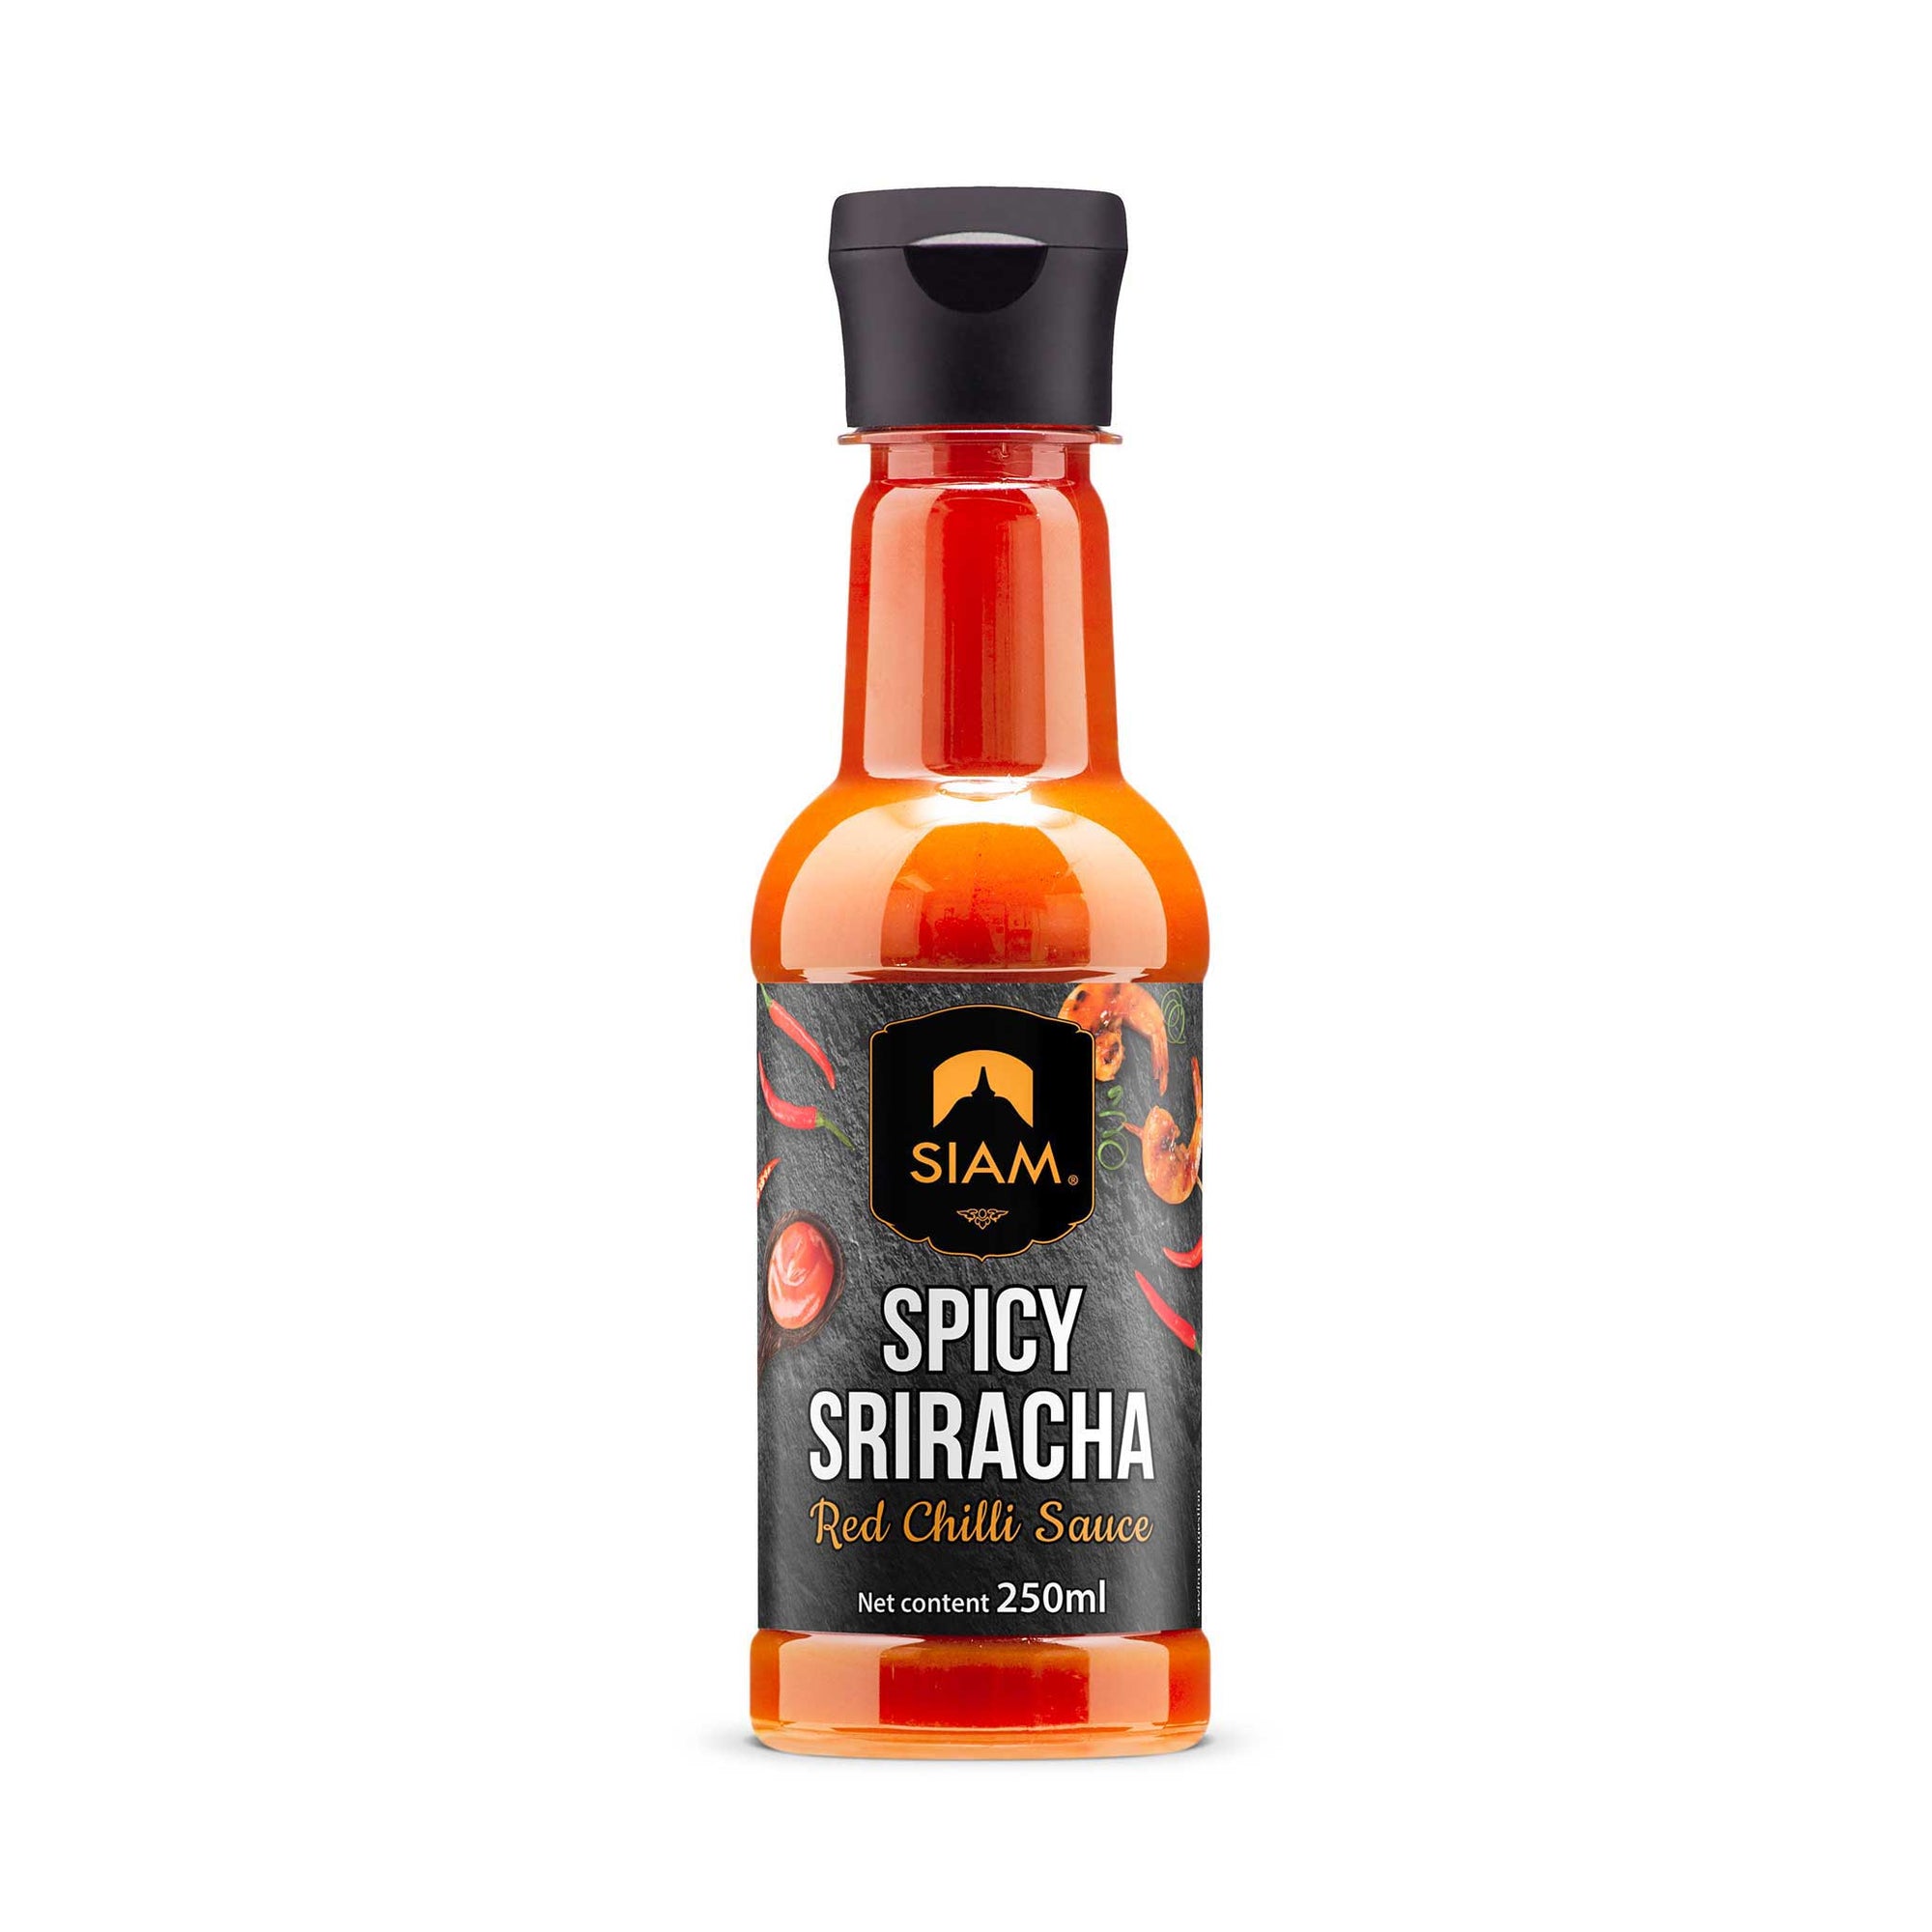 SIAM Spicy Sriracha Red Chilli Sauce, 8.4 fl oz (250 ml)